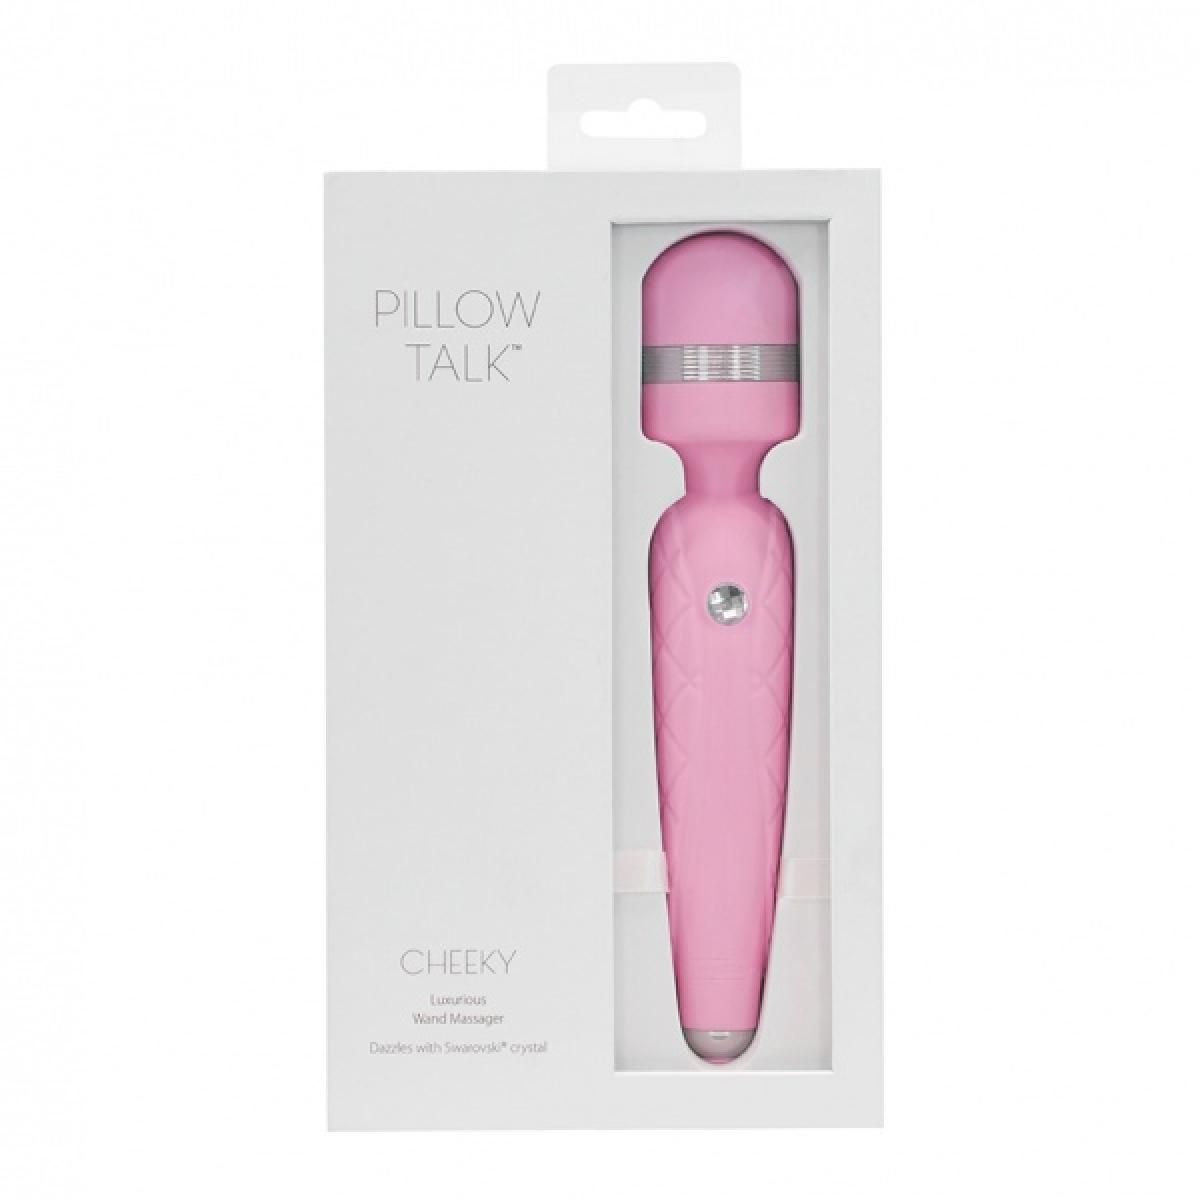 TALK Rose Cheeky PILLOW - Pillow Talk Wand Vibrator wand-massager